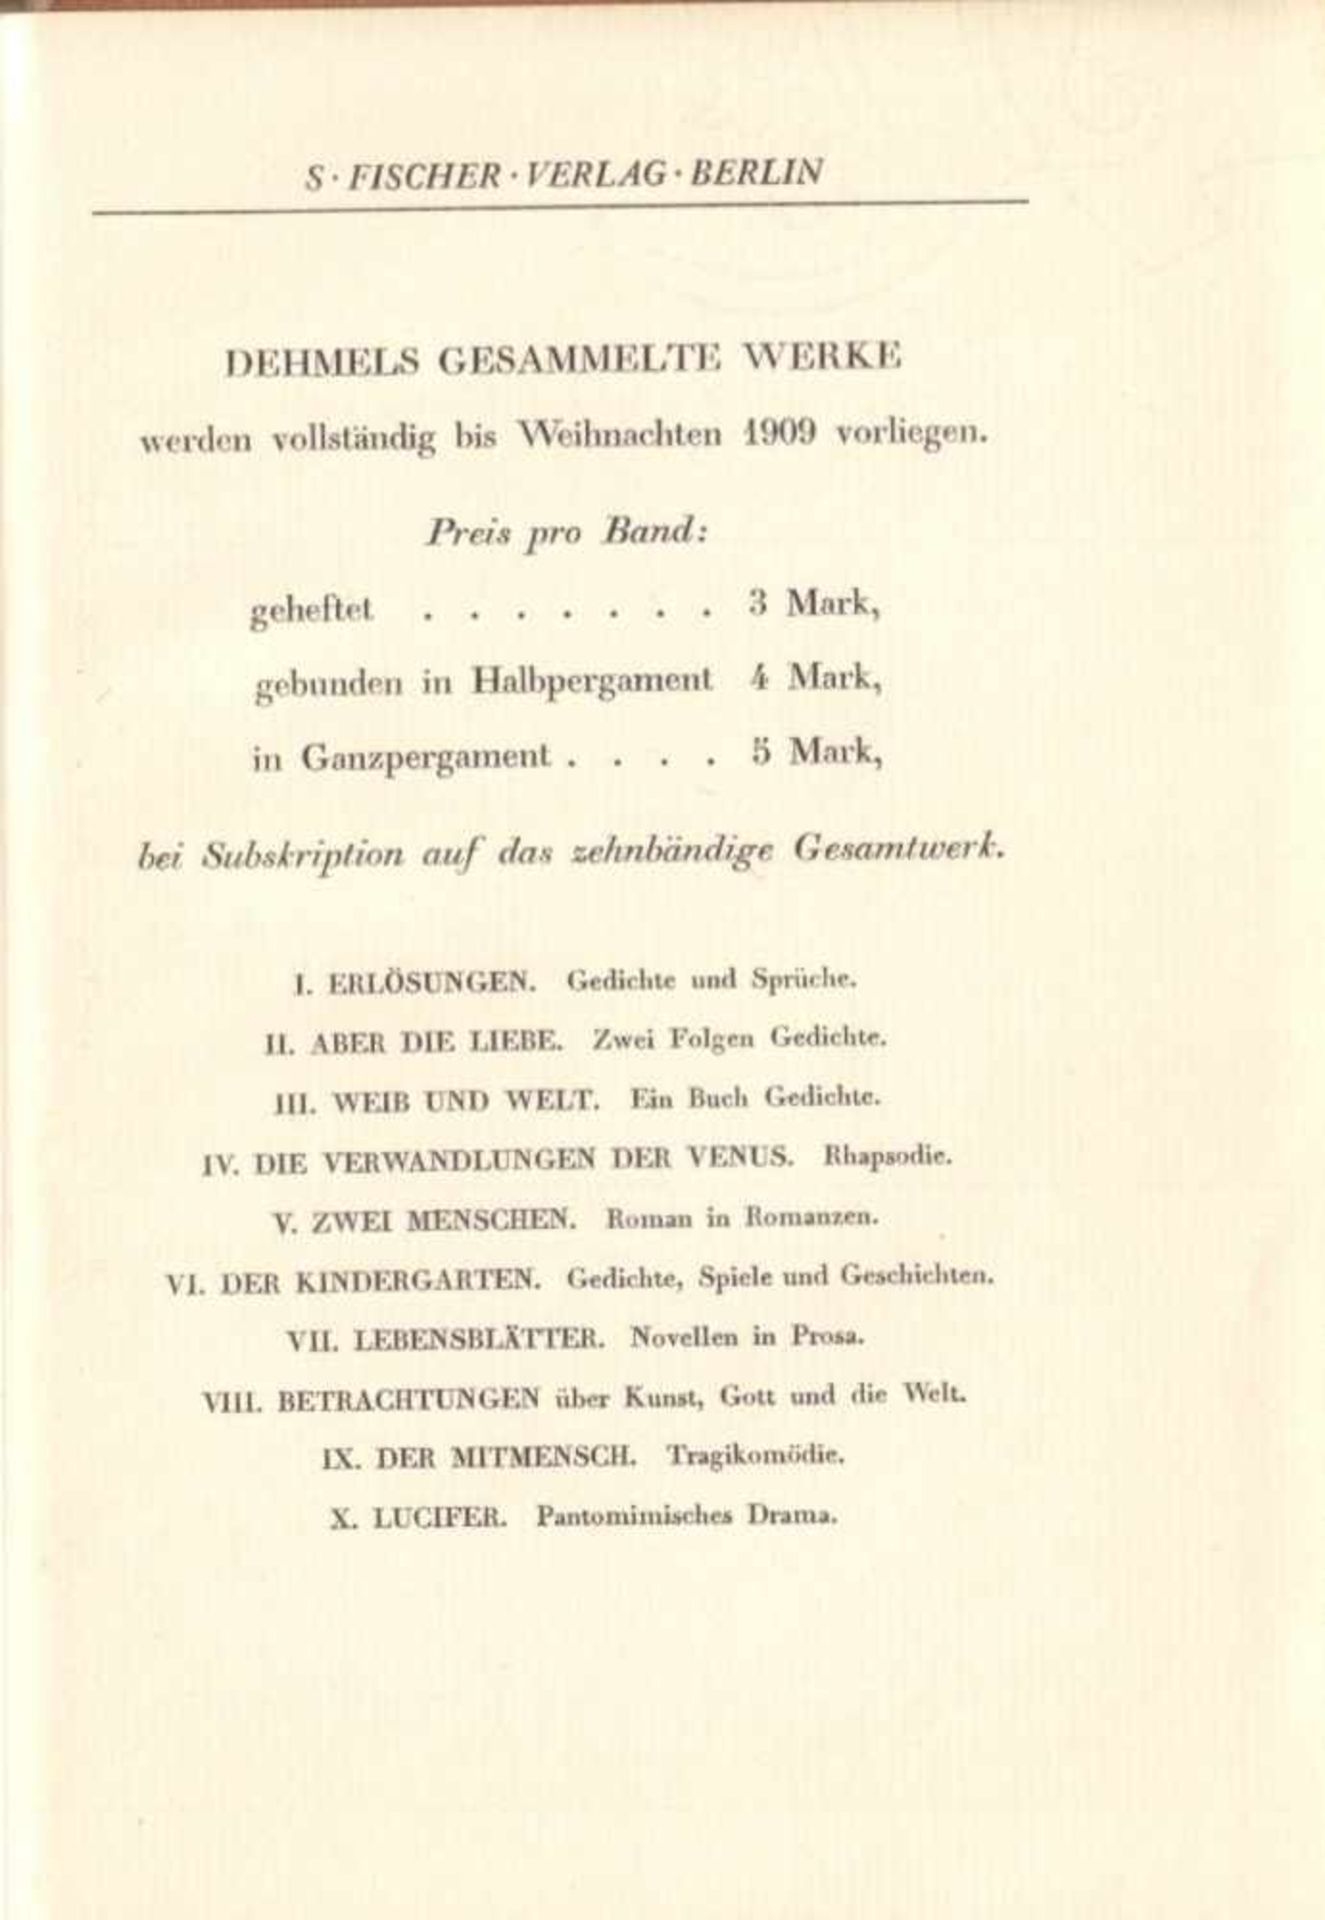 Richard Dehmel. Gesammelte Werke. 10 Bände. Berlin, S. Fischer, 1906. 8°. Zus. ca. 1815 S. Nummer 11 - Image 5 of 5